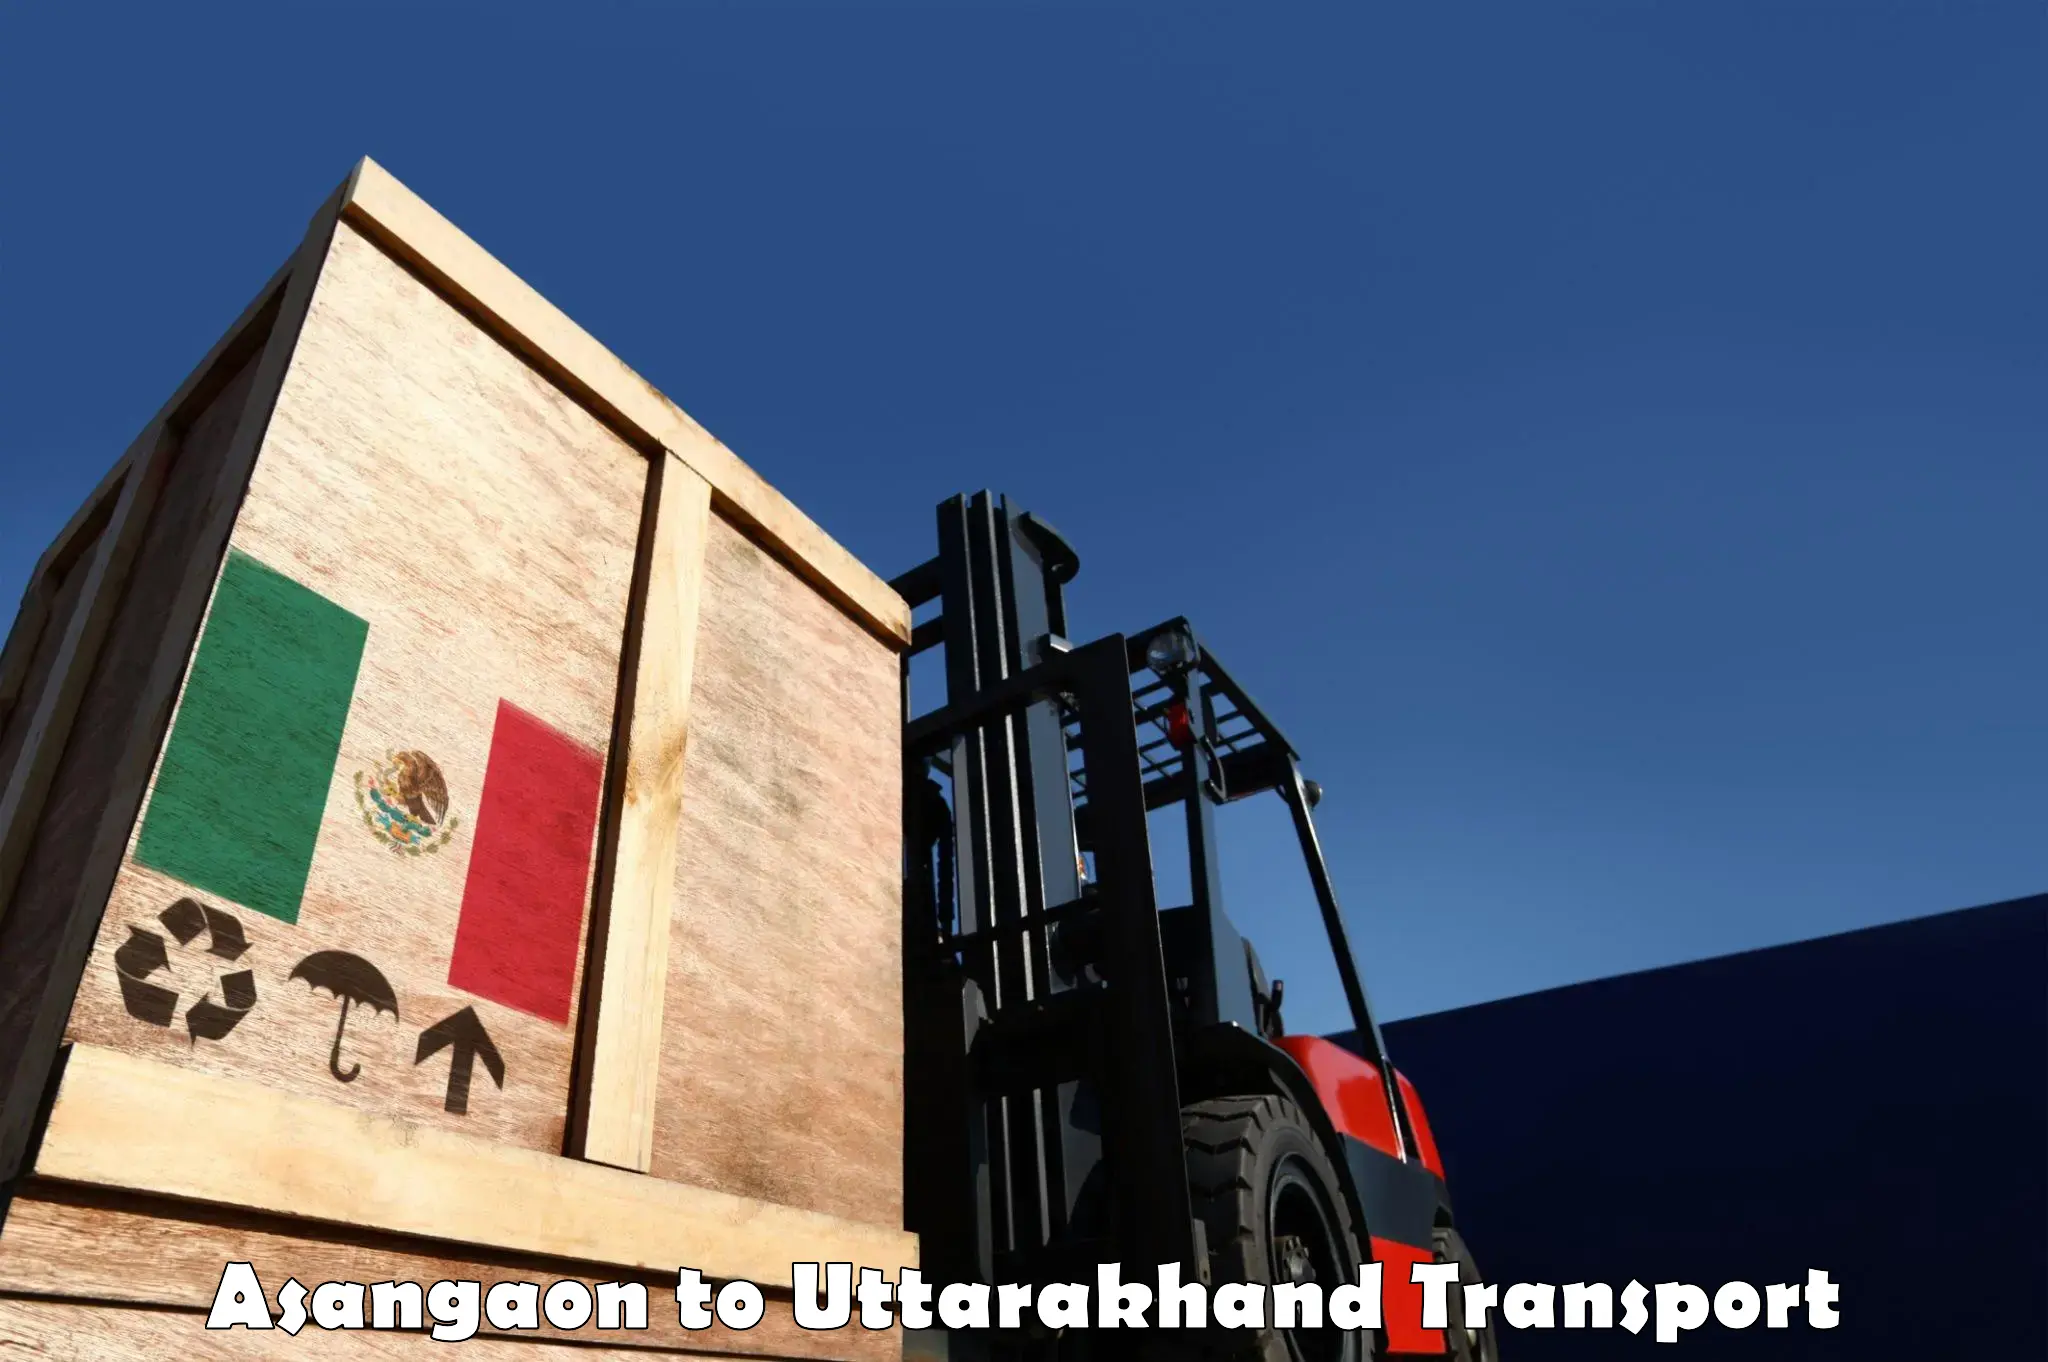 Cargo transport services Asangaon to Lansdowne